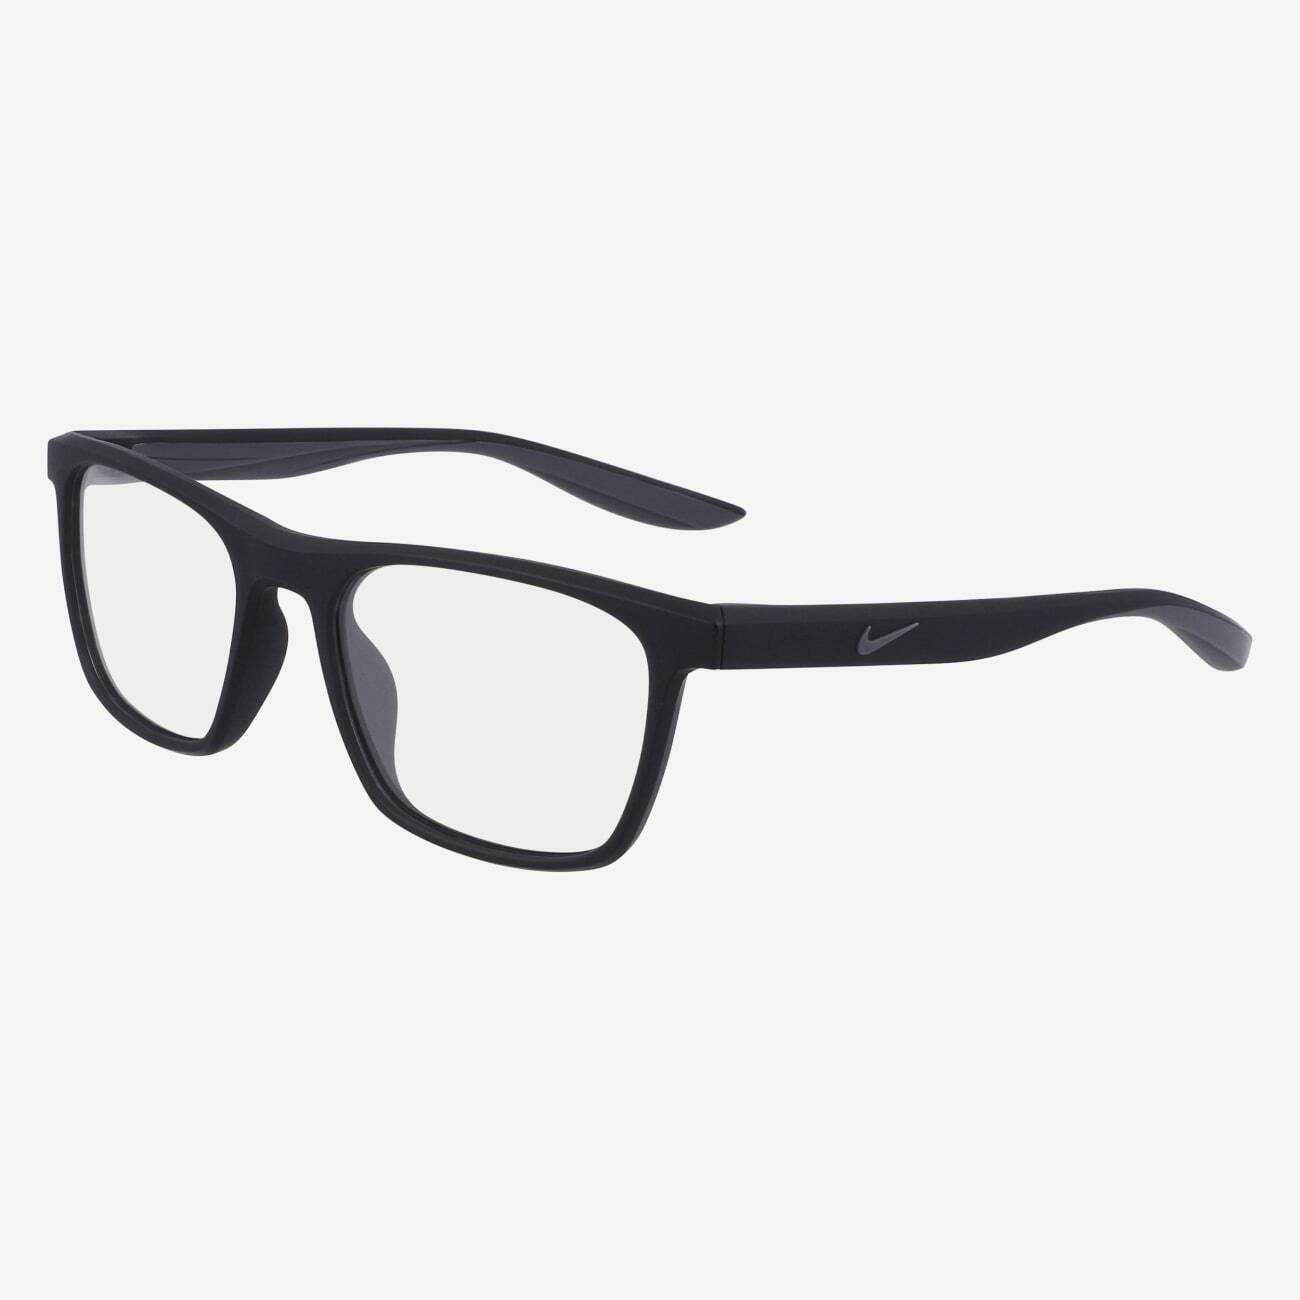 Men's Eyeglasses | Nike Vision